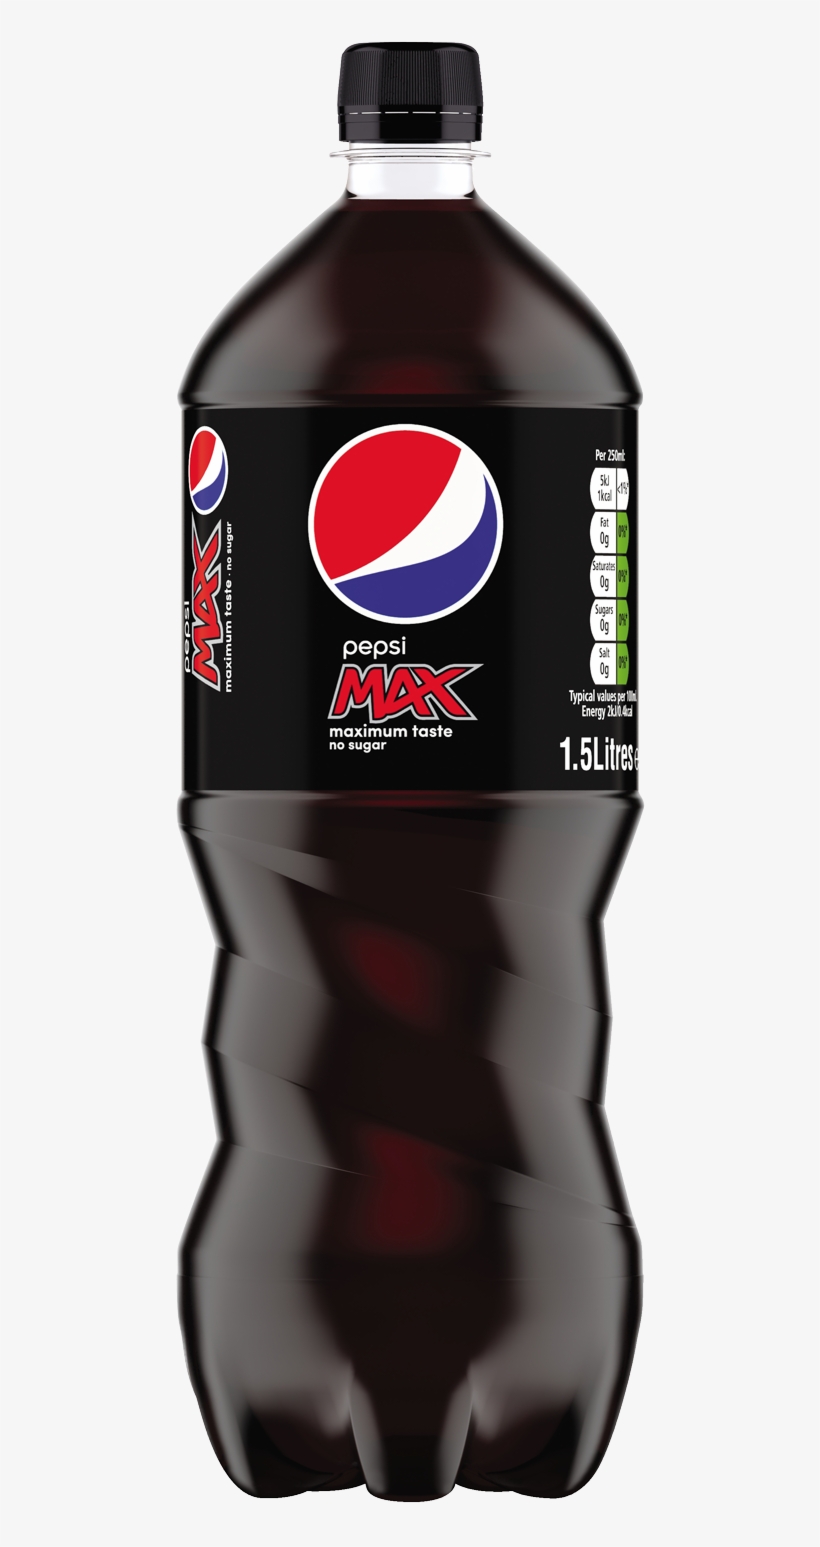 1.5 Litre Pepsi Max.